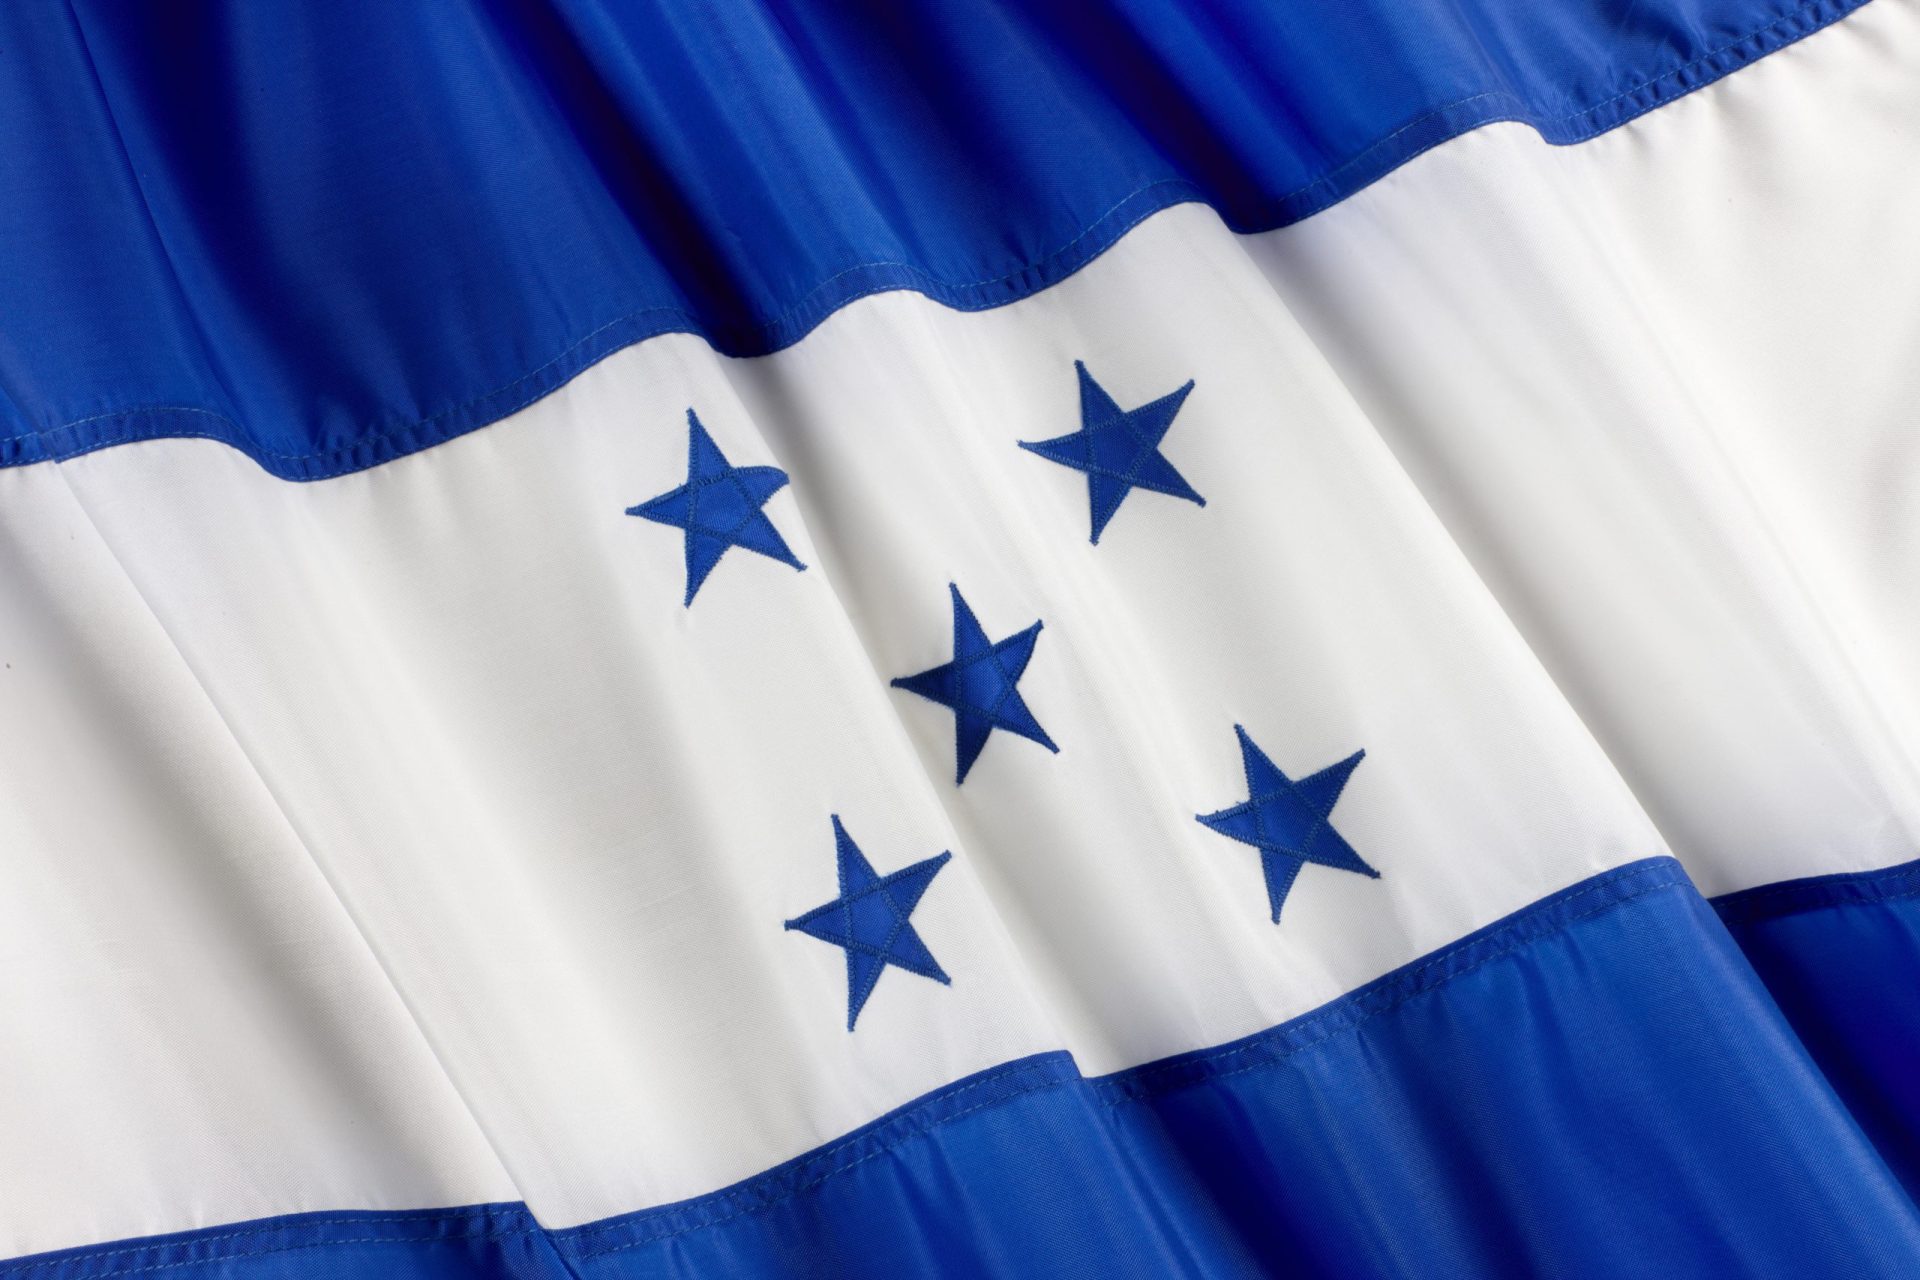 18 mortos após confrontos em prisão das Honduras